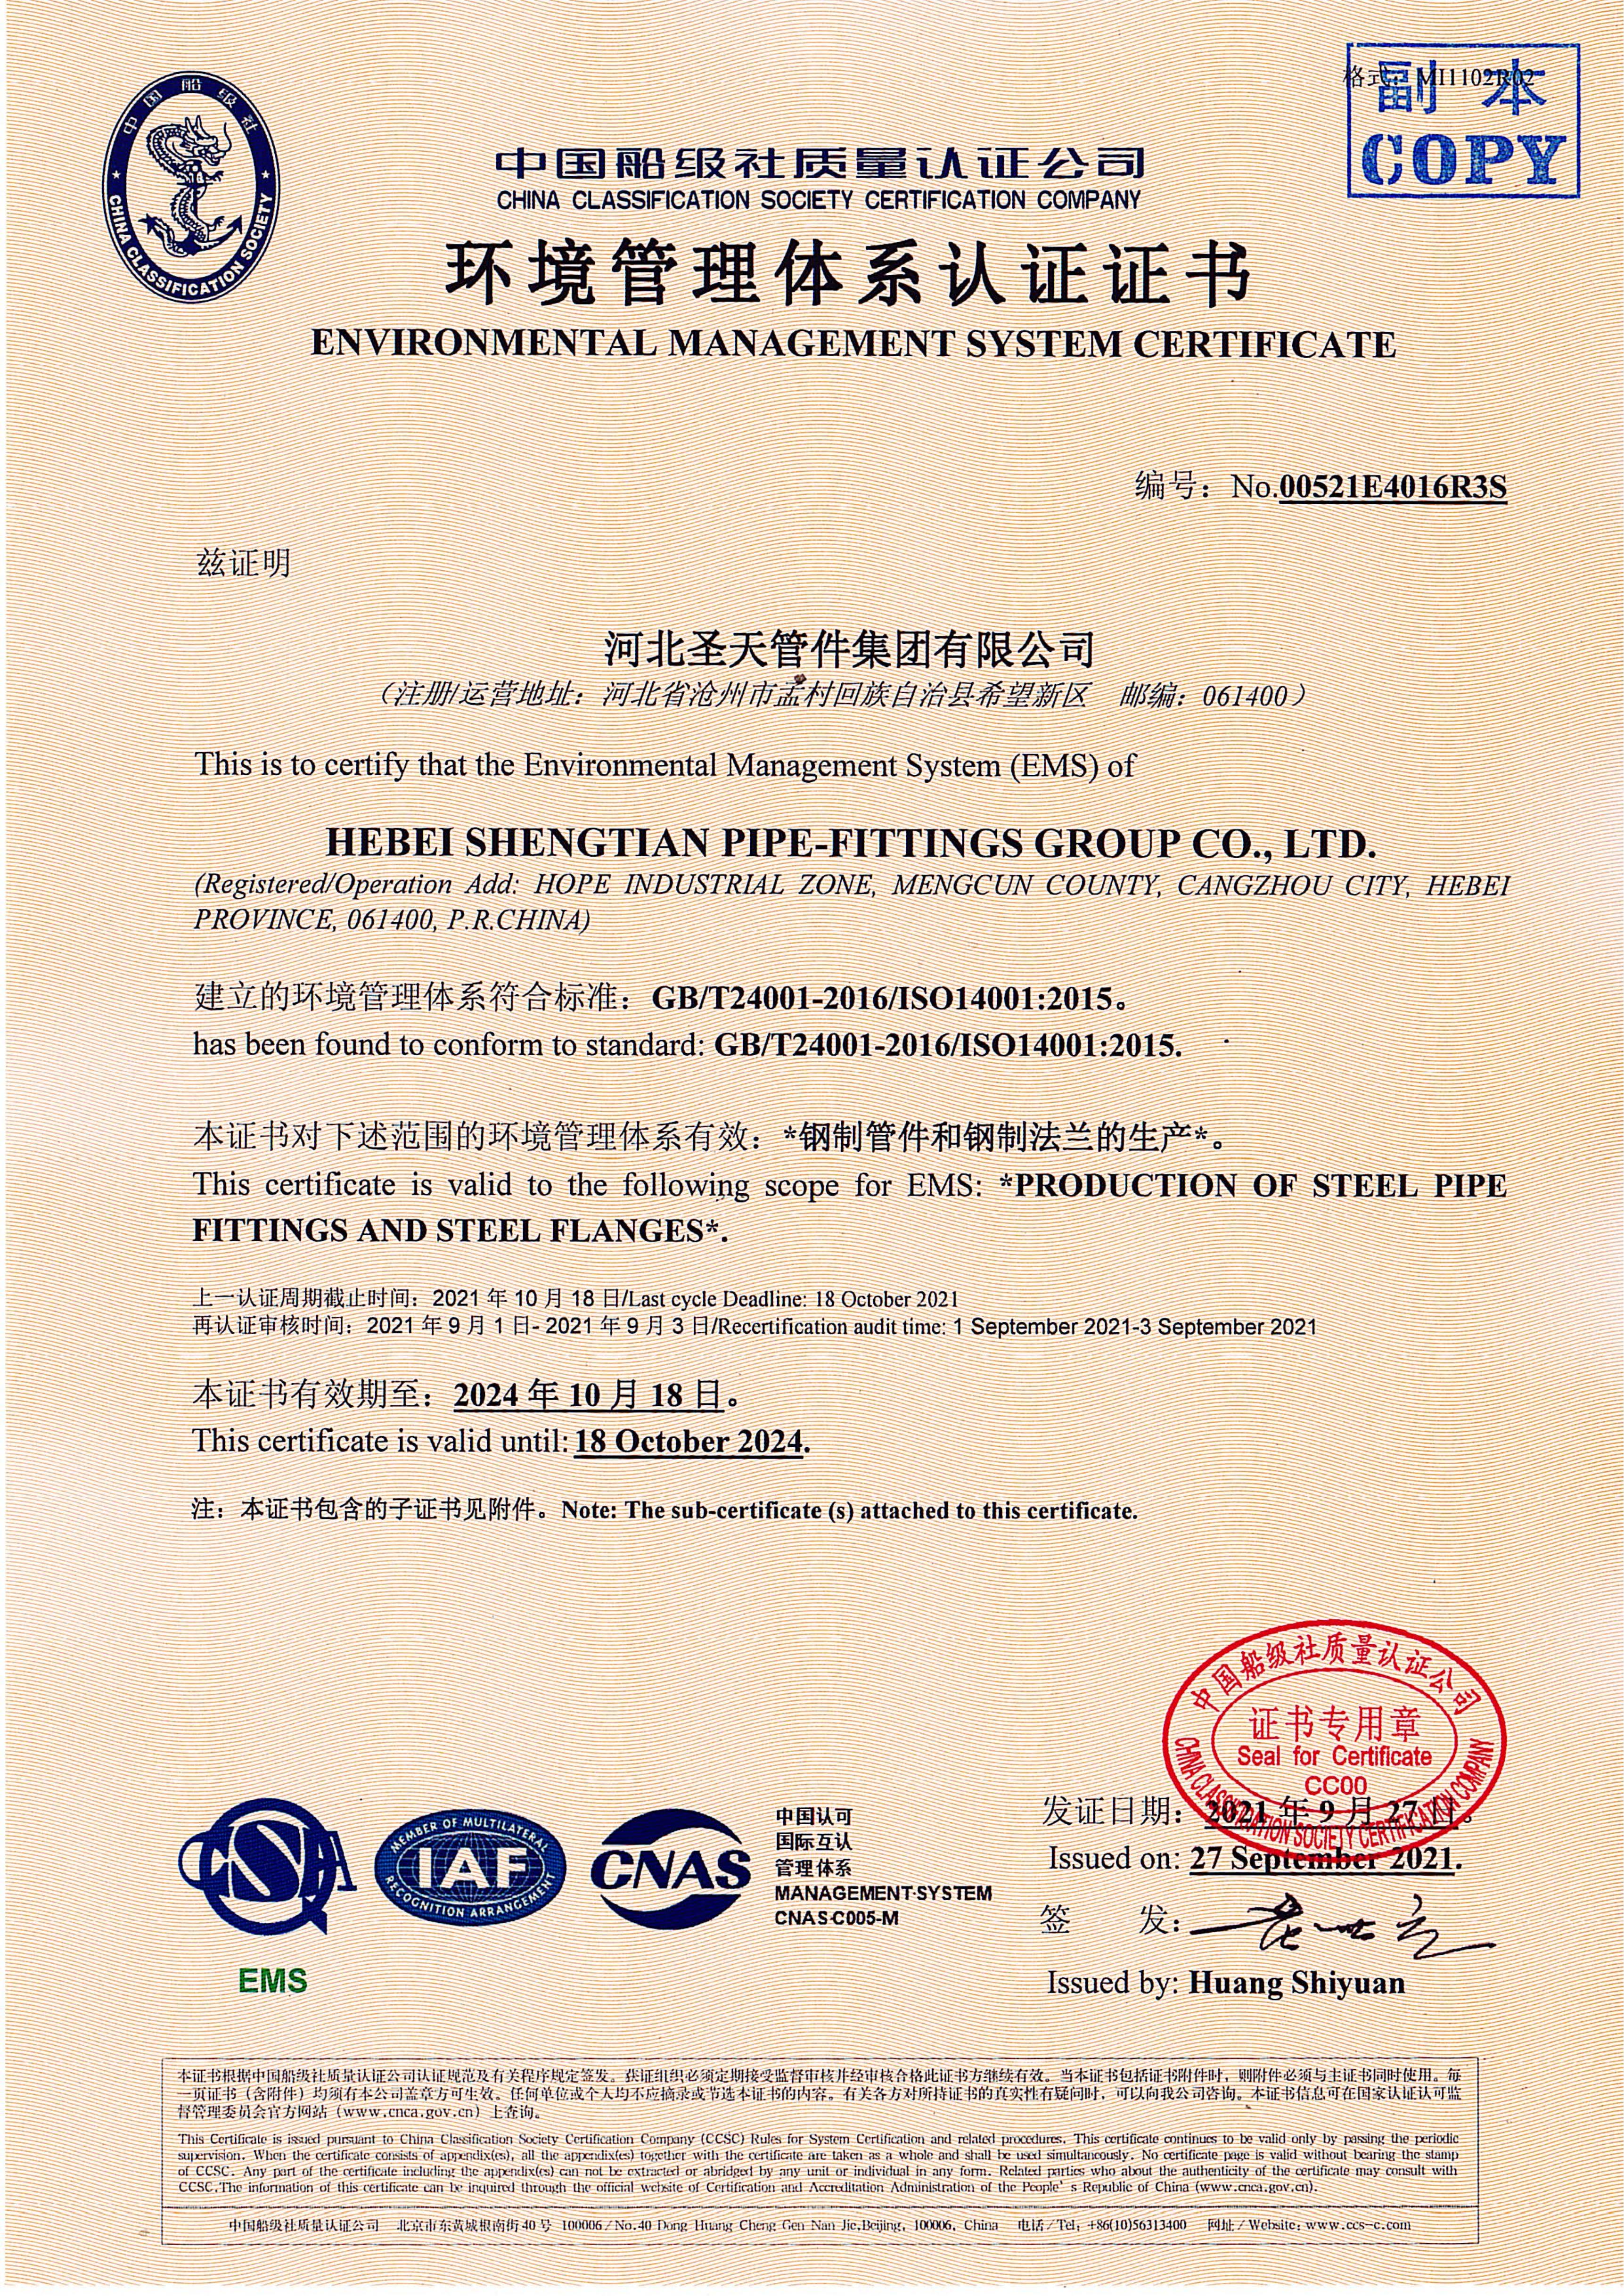 中国船级社职业健康宁静治理体系认证证书副本